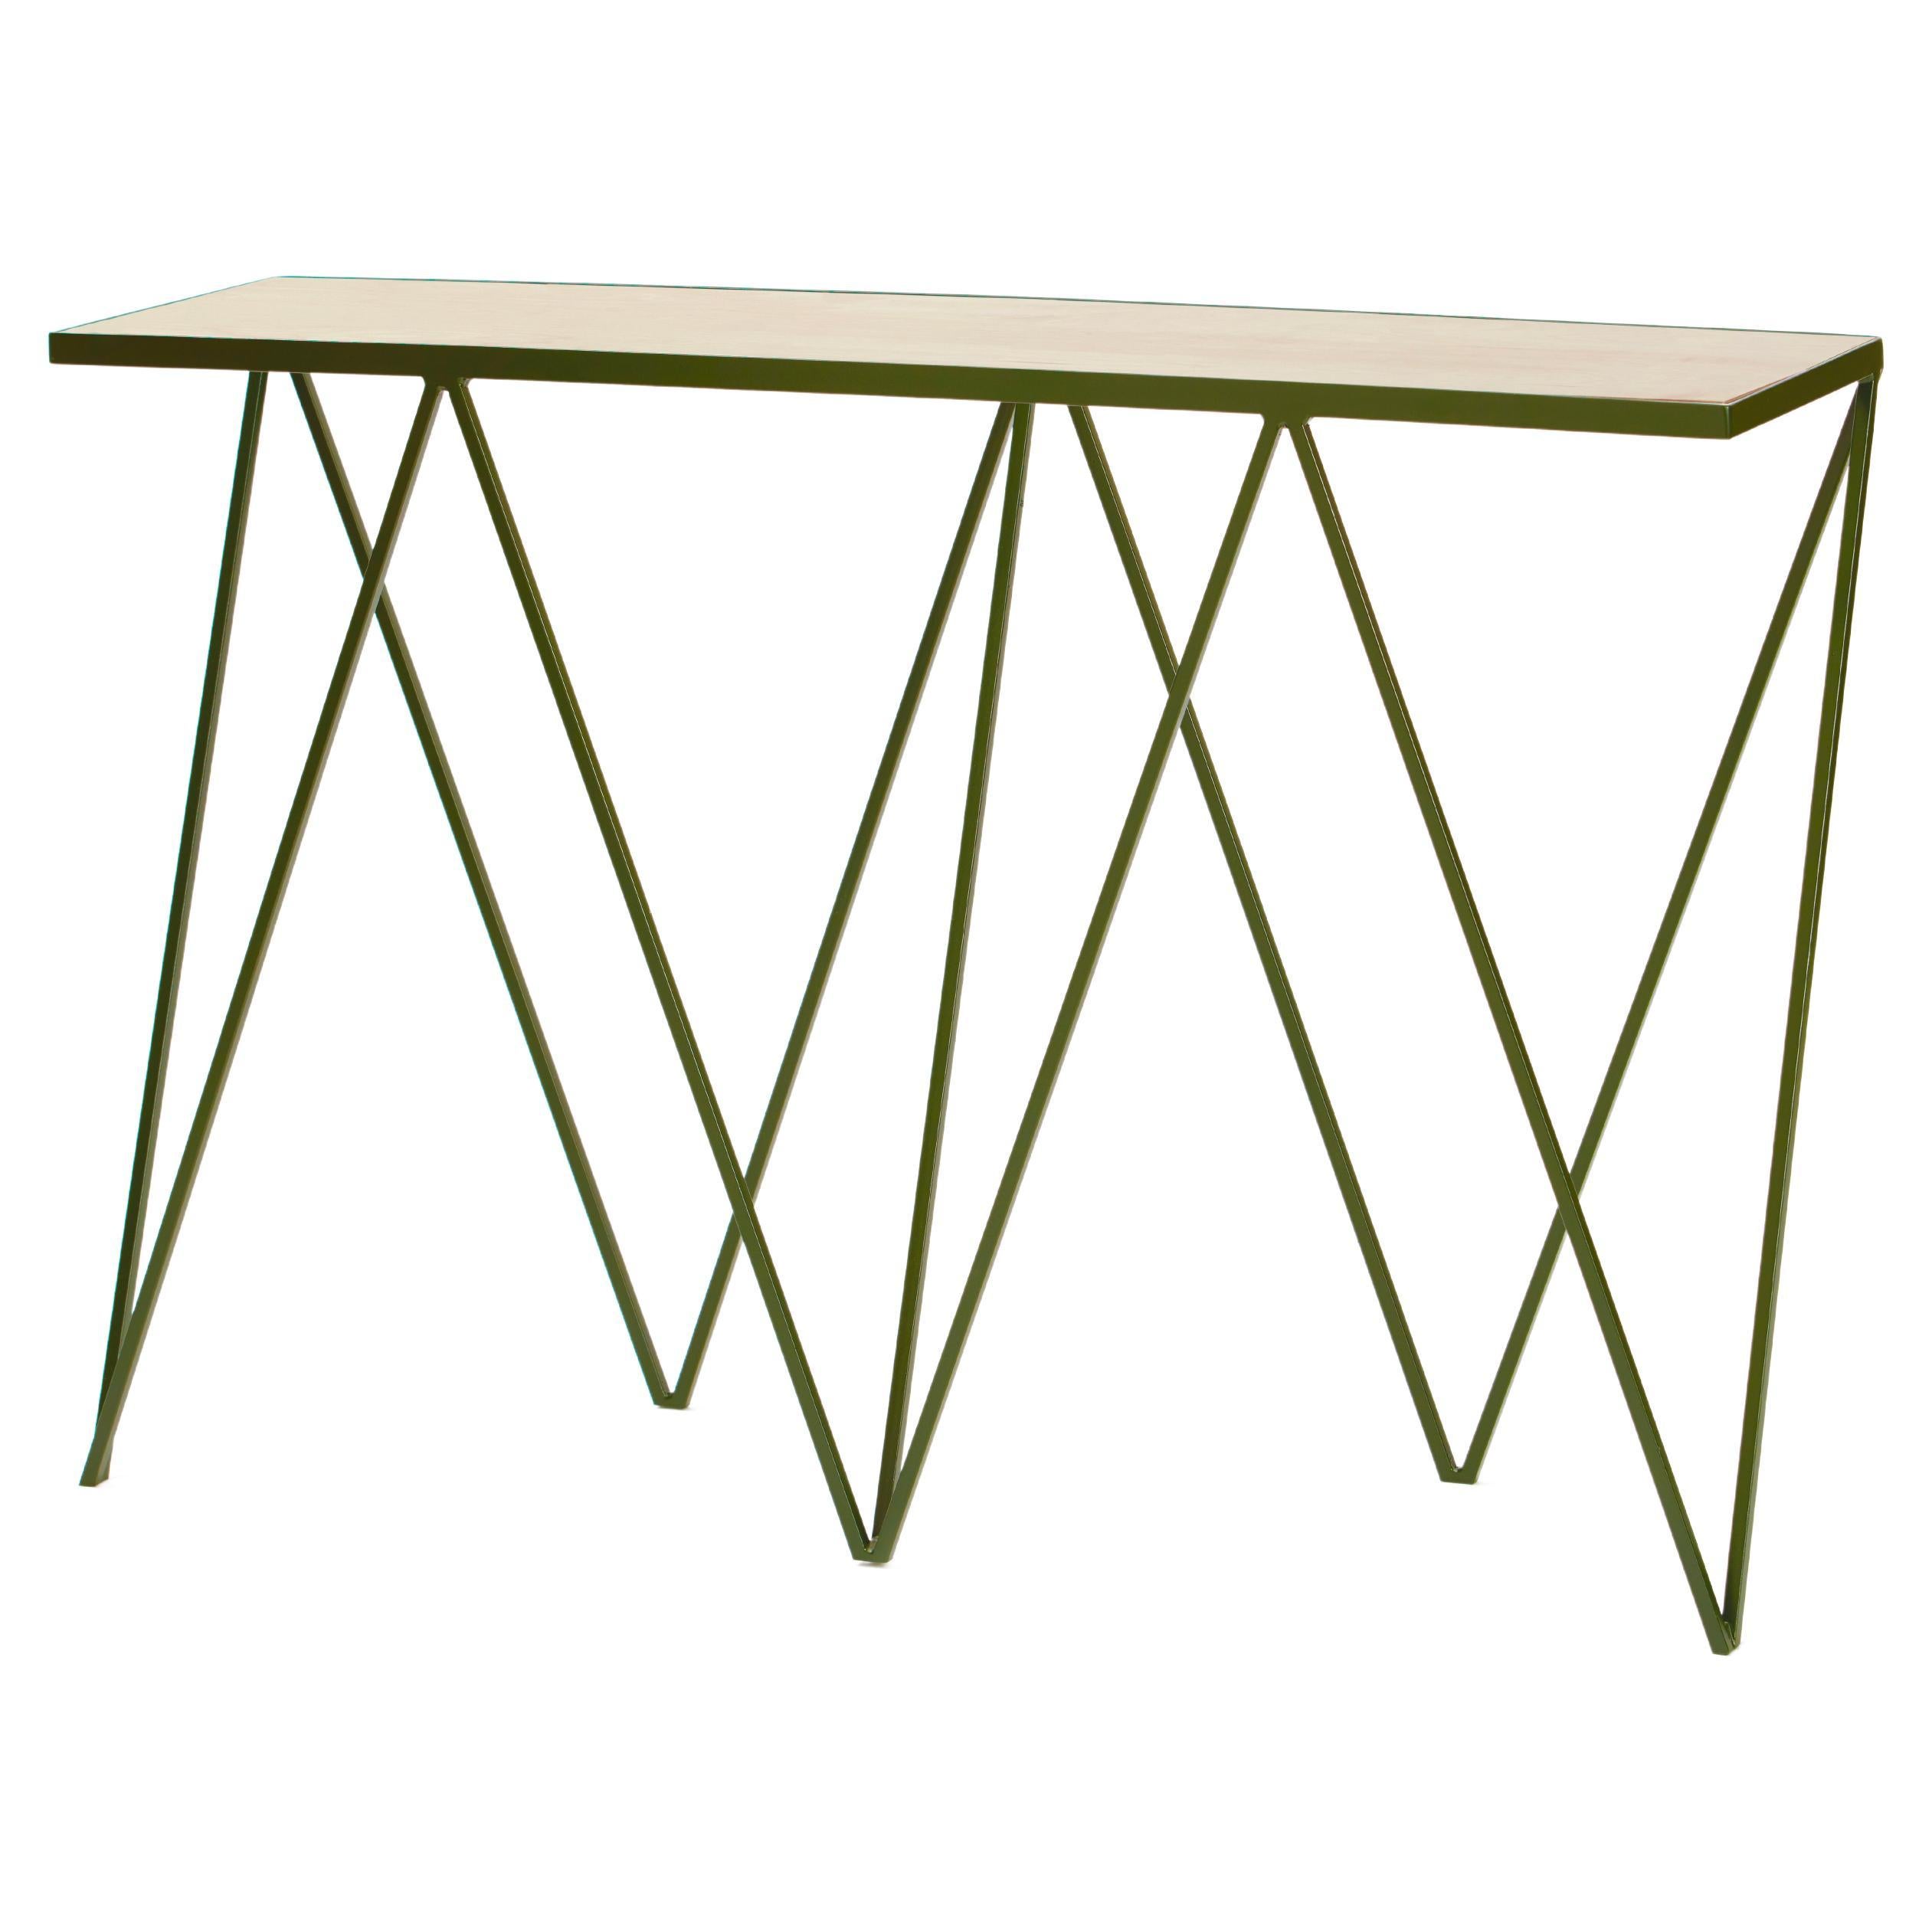 Table console en acier vert foncé mince avec plateau en bois / personnalisable